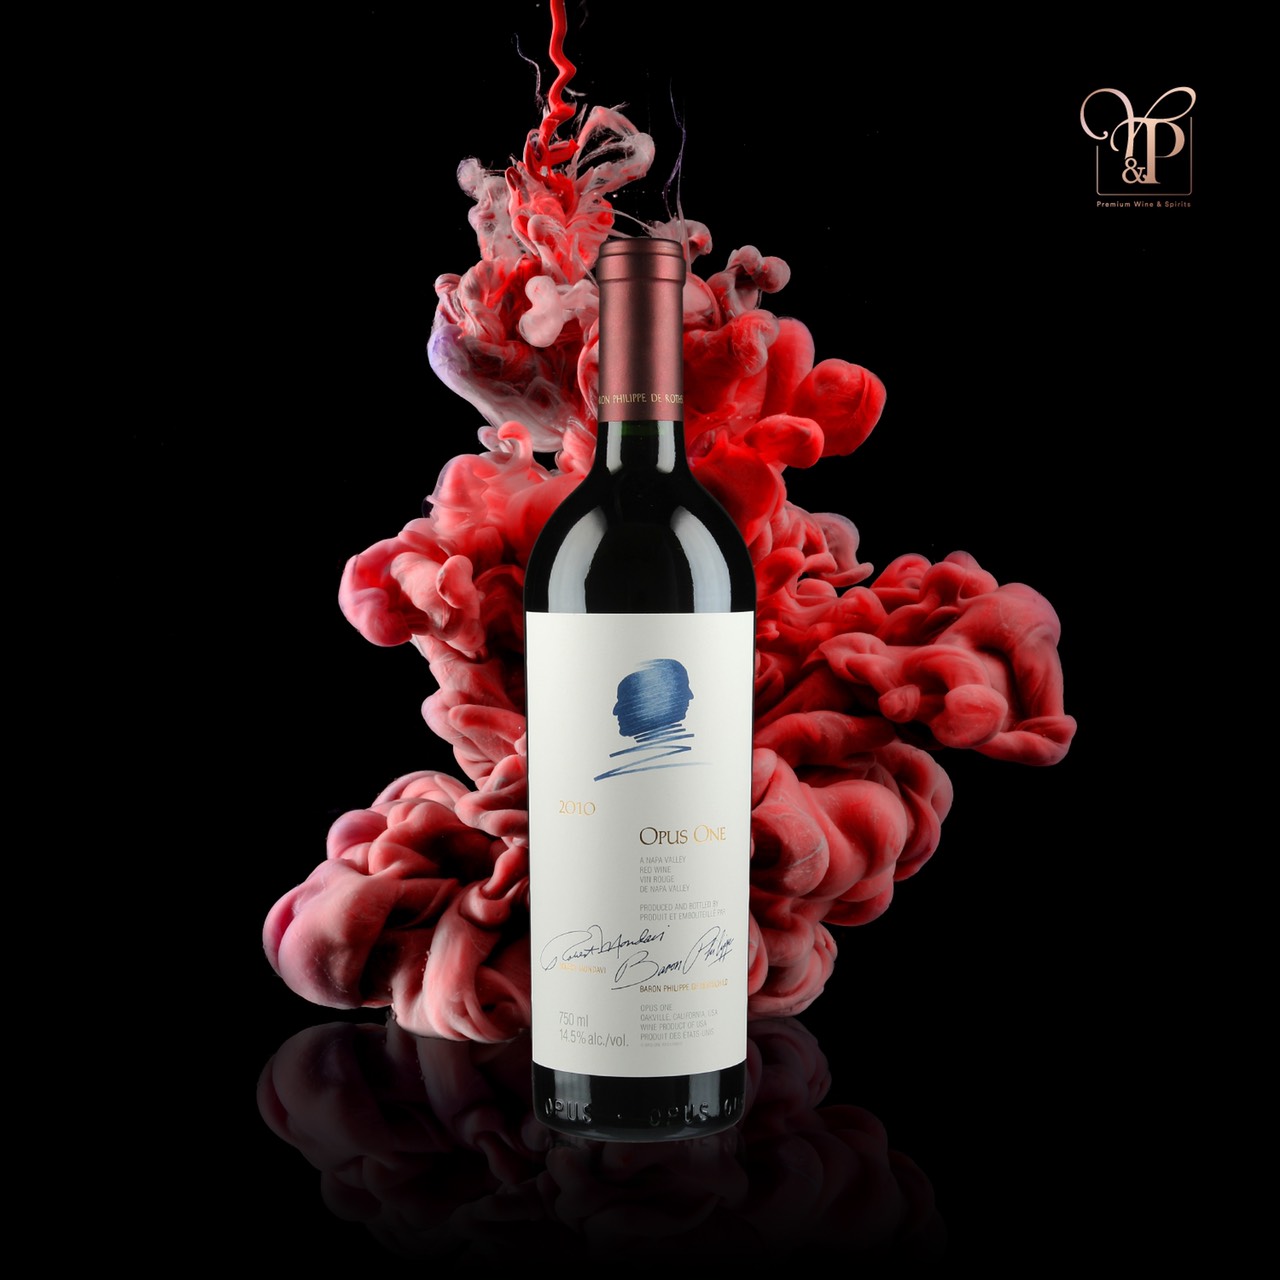 ไวน์ Opus One พร้อมส่งทันที! เจ้าใหญ่ราคาดีที่สุด สินค้าแท้ 100%